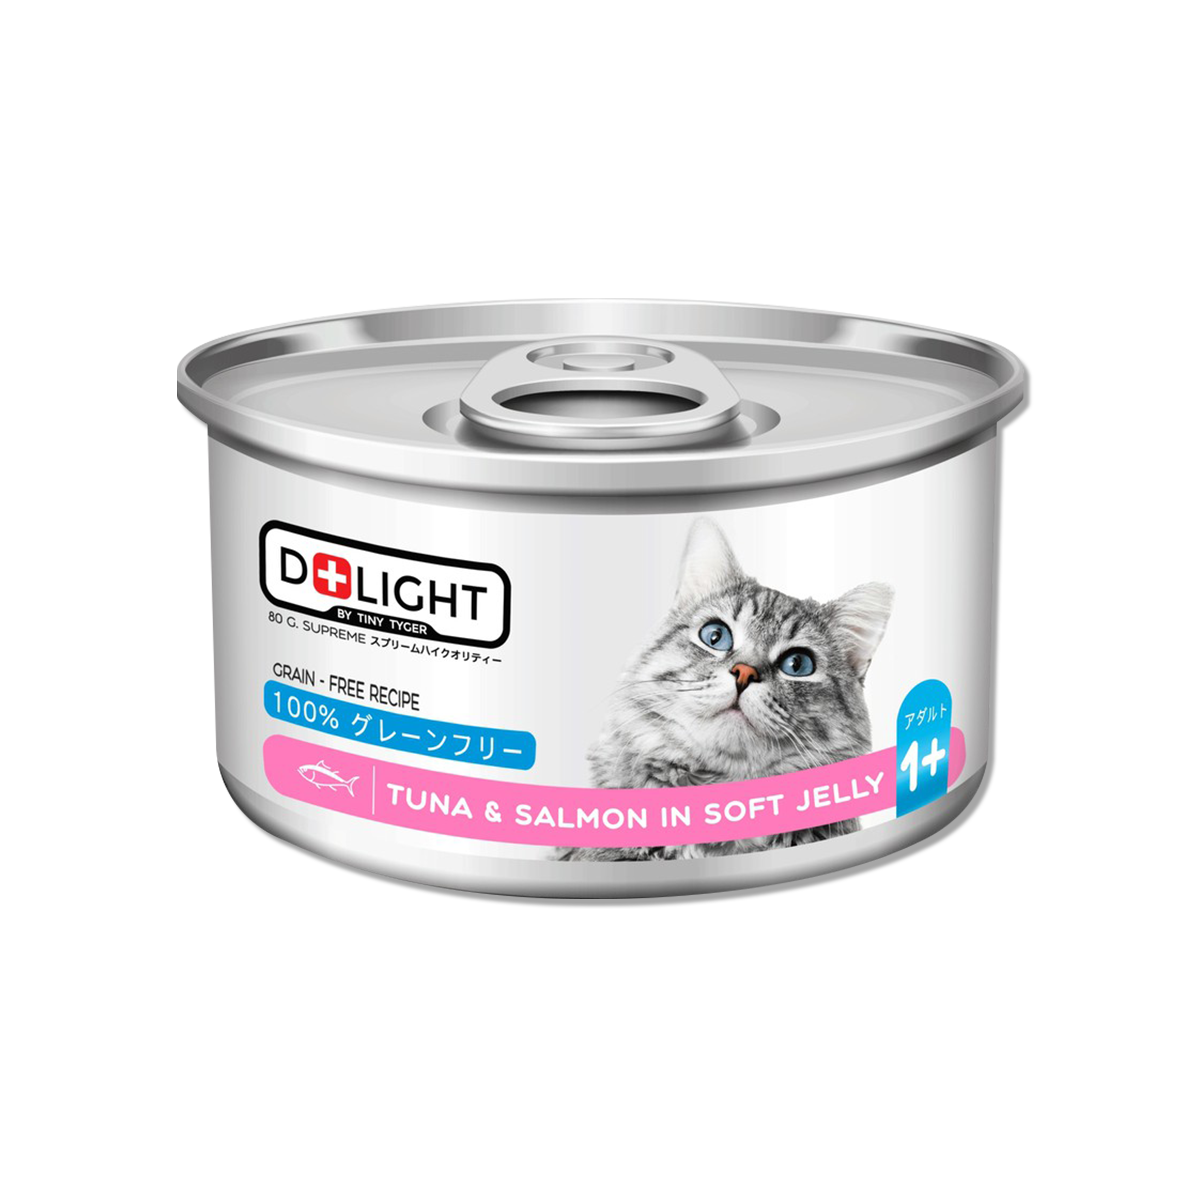 D+LIGHT Tuna Topping Salmon In Soft Jelly ดีไลท์ อาหารแมวกระป๋อง รสทูน่าเนื้อขาวพรีเมี่ยมหน้าปลาแซลมอนในเจลลี่นุ่ม 80 กรัม 